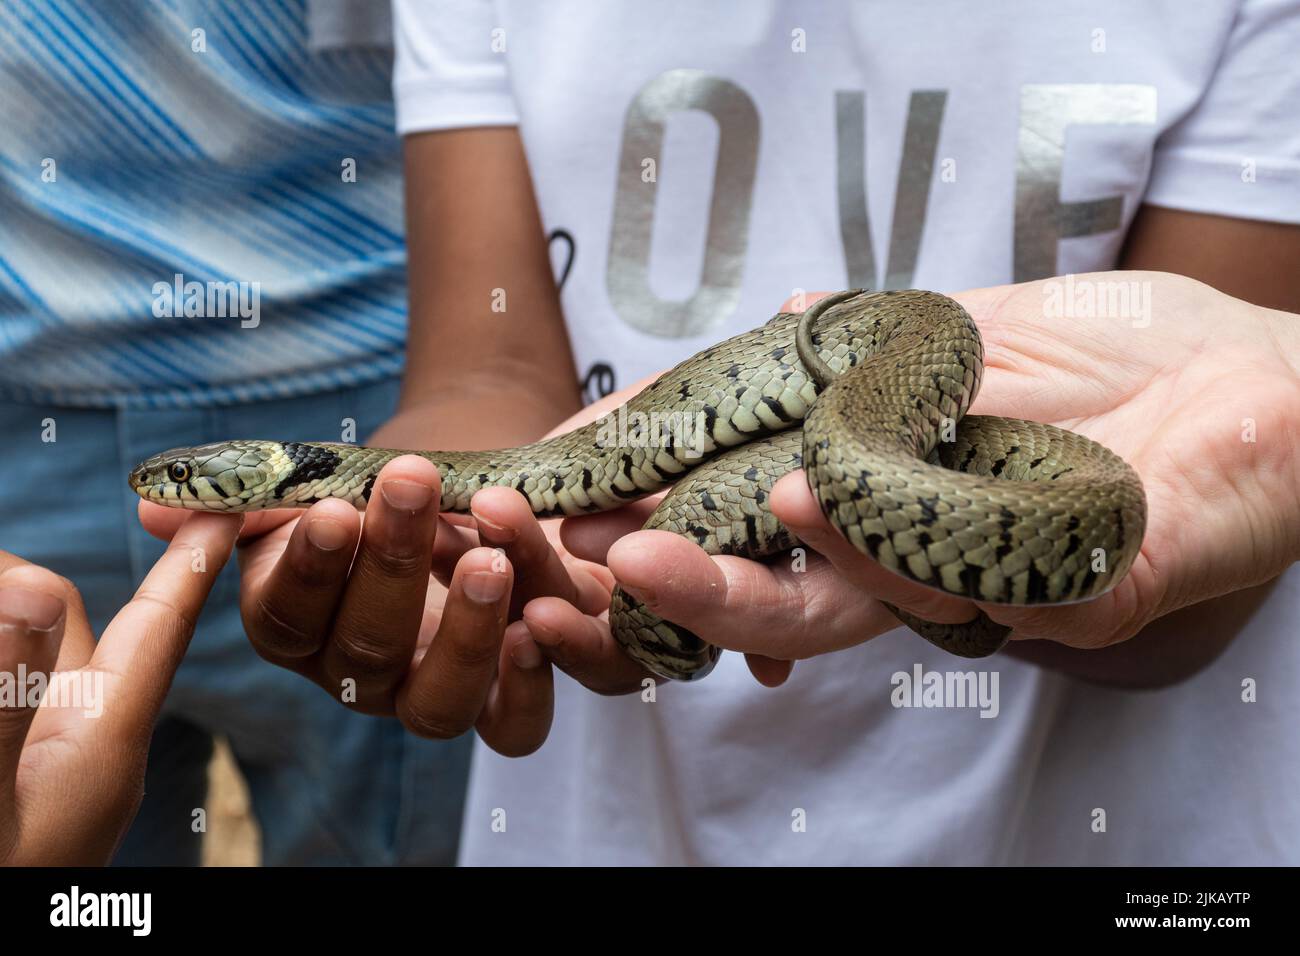 Personnes manipulant un serpent d'herbe à un événement éducatif sur la faune, les familles en contact avec la nature, Royaume-Uni Banque D'Images